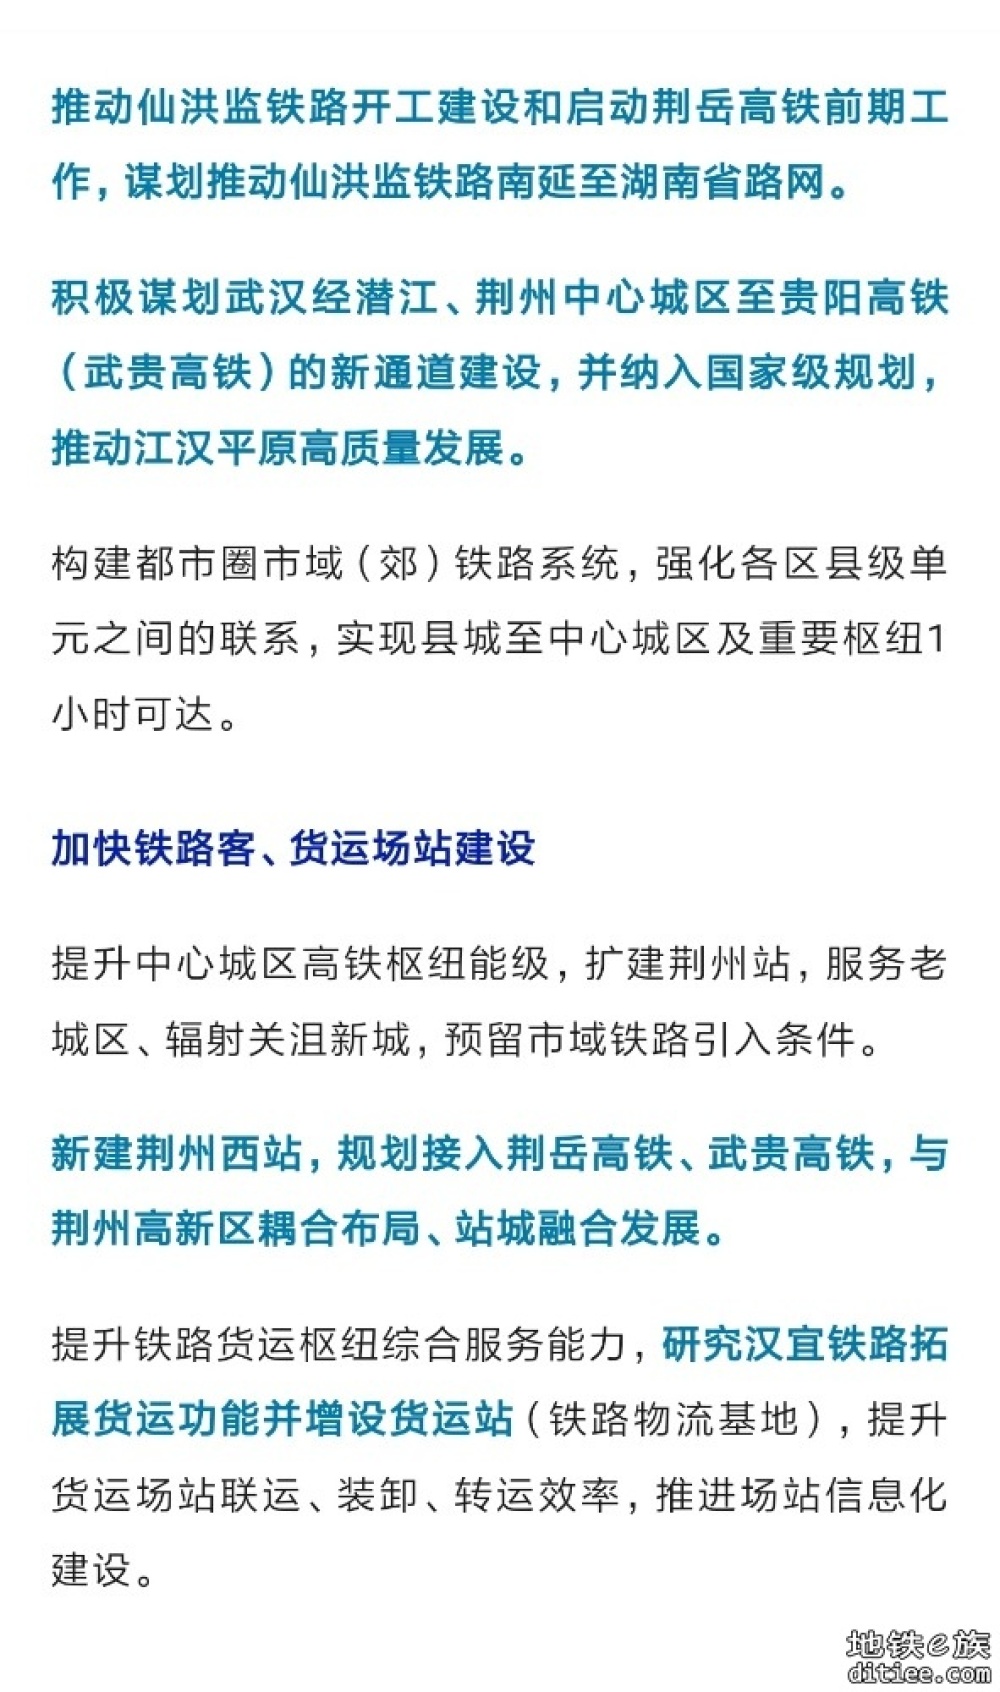 荆州规划建设江汉平原高铁大环线